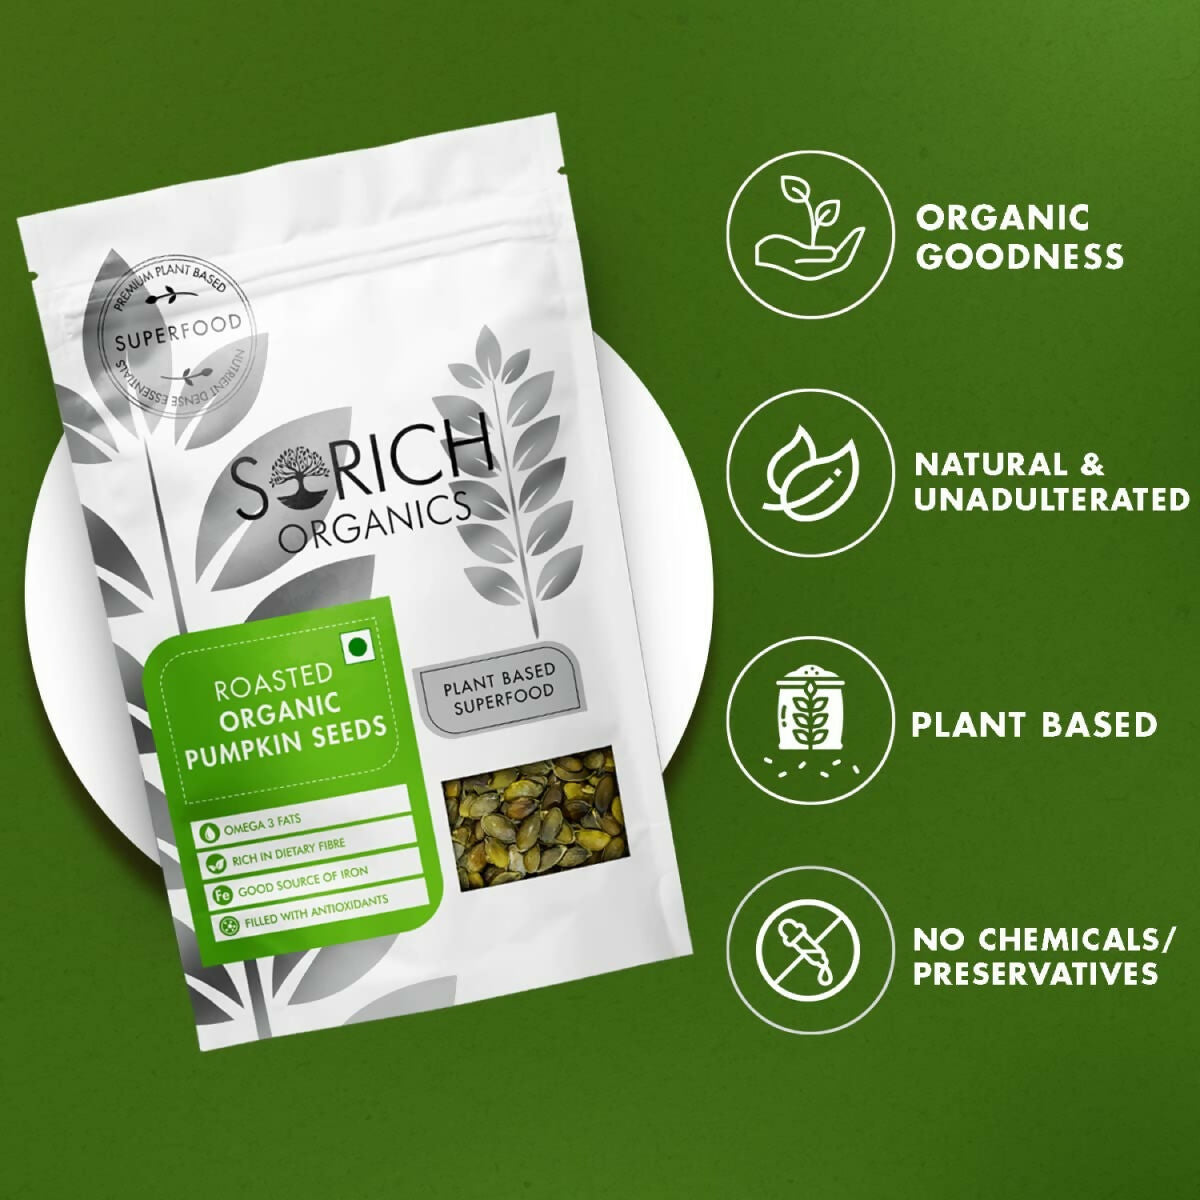 Sorich Organics Roasted Pumpkin Seeds - Distacart